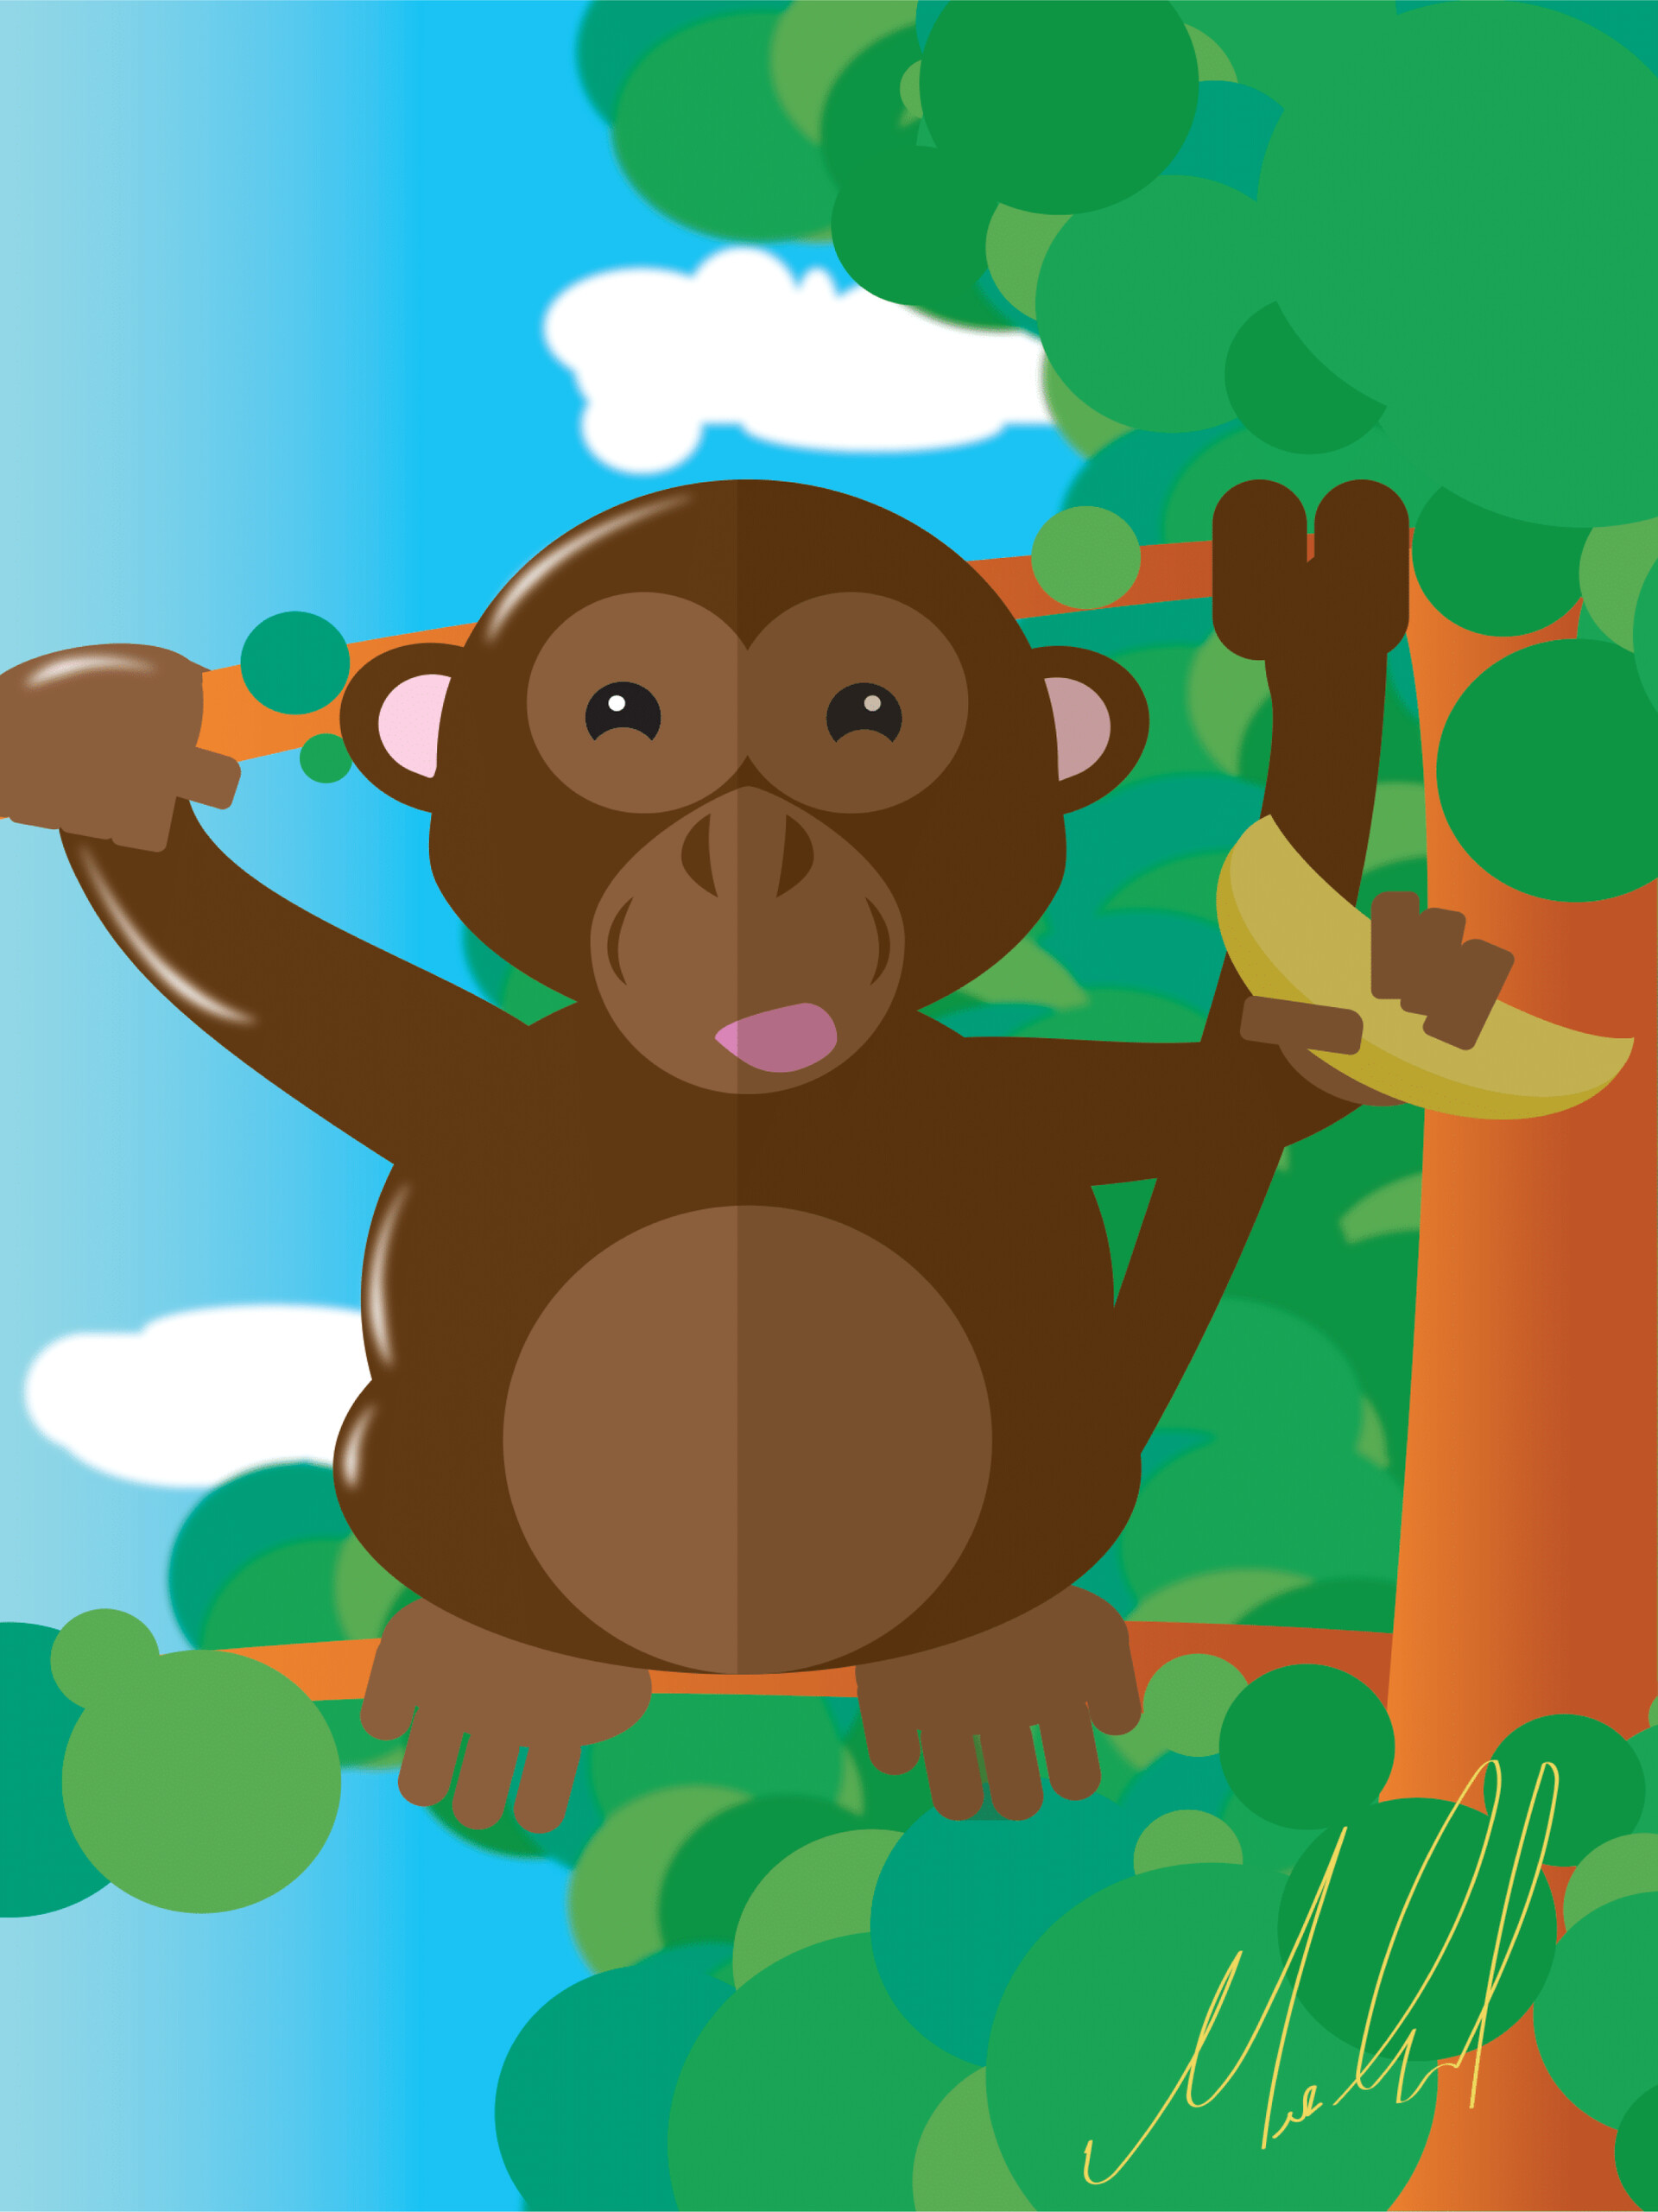 ArtStation - Monkey Illustration